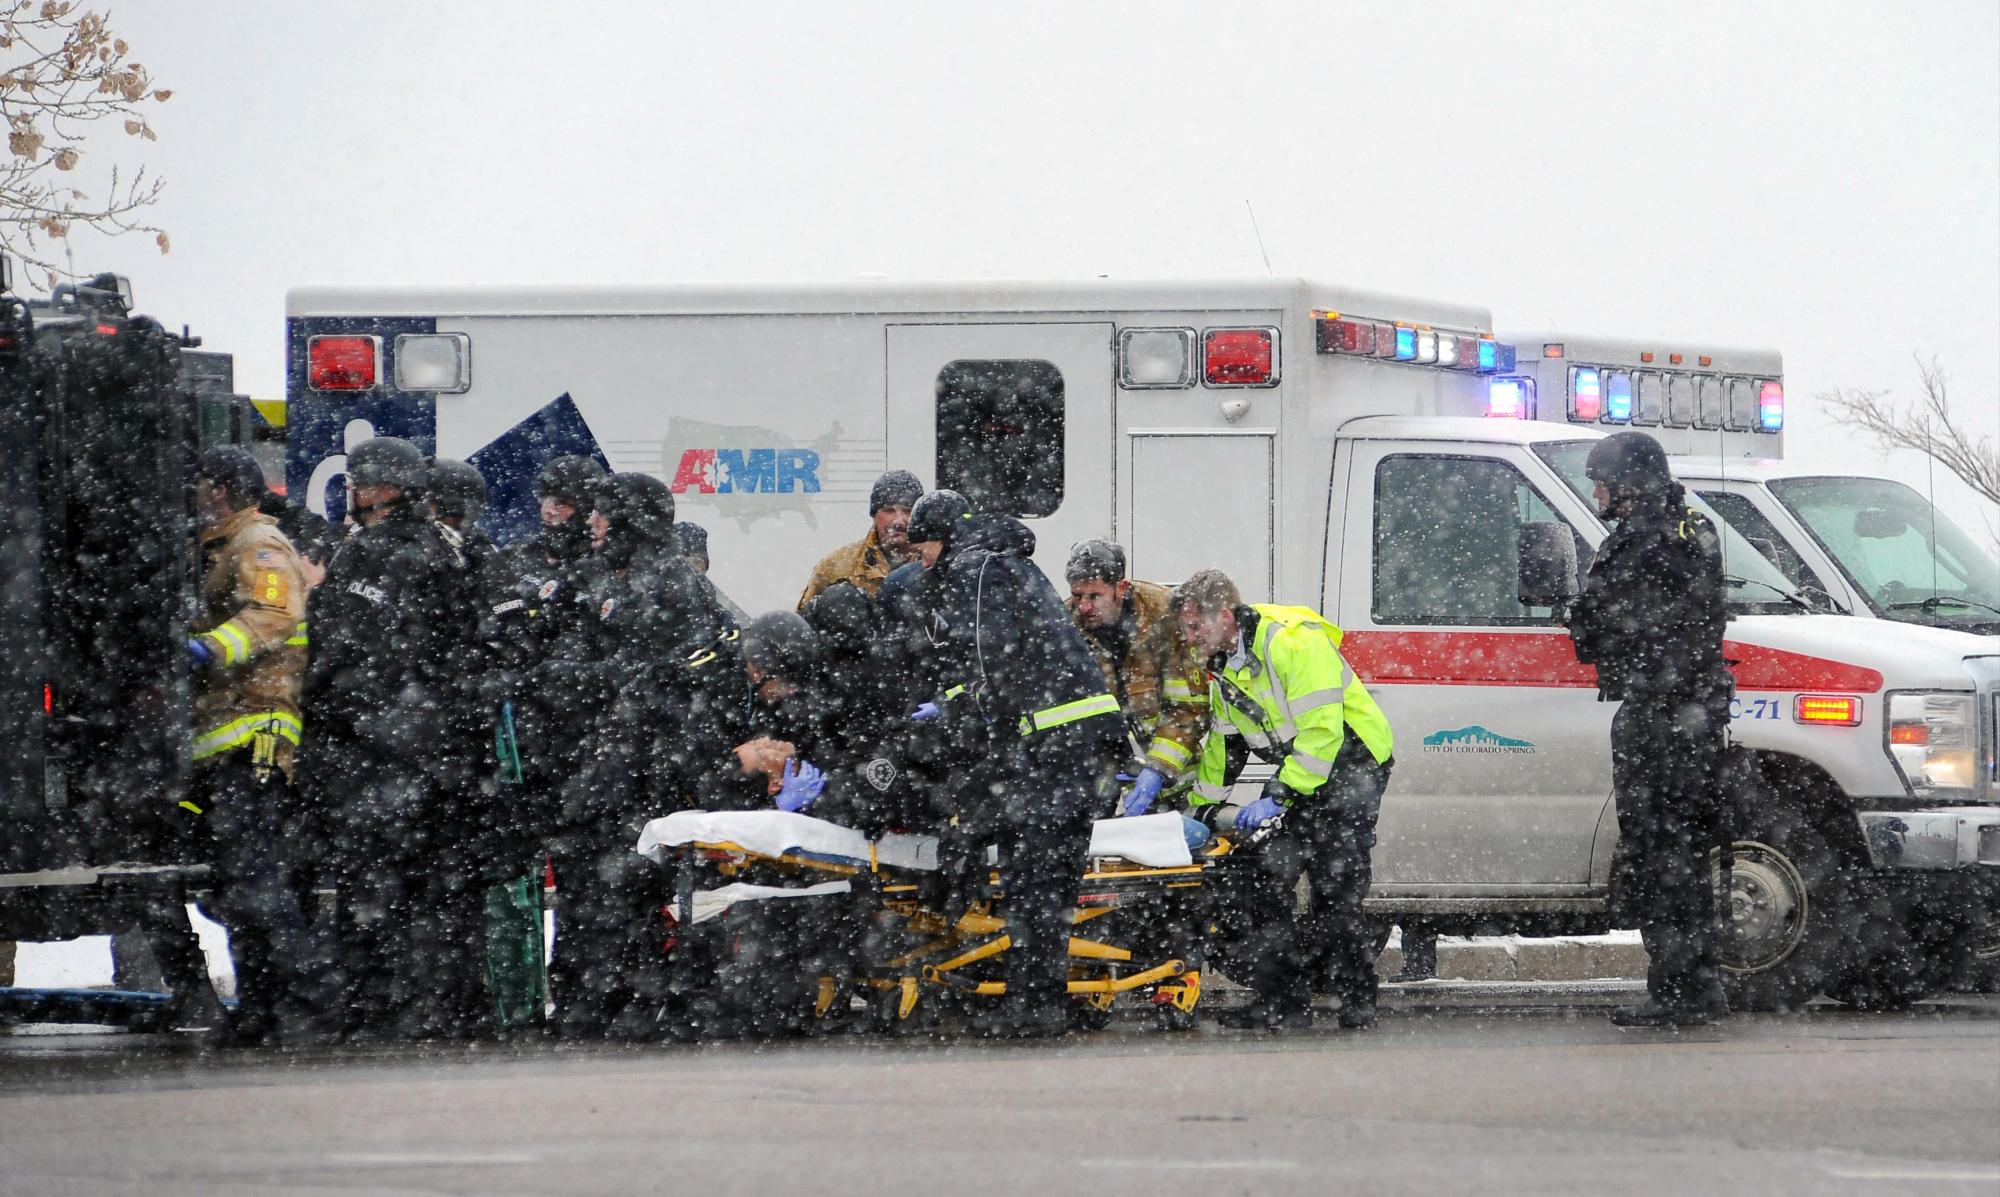 Bajo una nevada ligera, personal de emergencia lleva a un agente herido hasta una ambulancia durante un tiroteo cerca de una clínica de Planned Parenthood en Colorado Springs, Colorado, el viernes 27 de noviembre de 2015. Según las autoridades, varias personas resultaron heridas en el tiroteo.